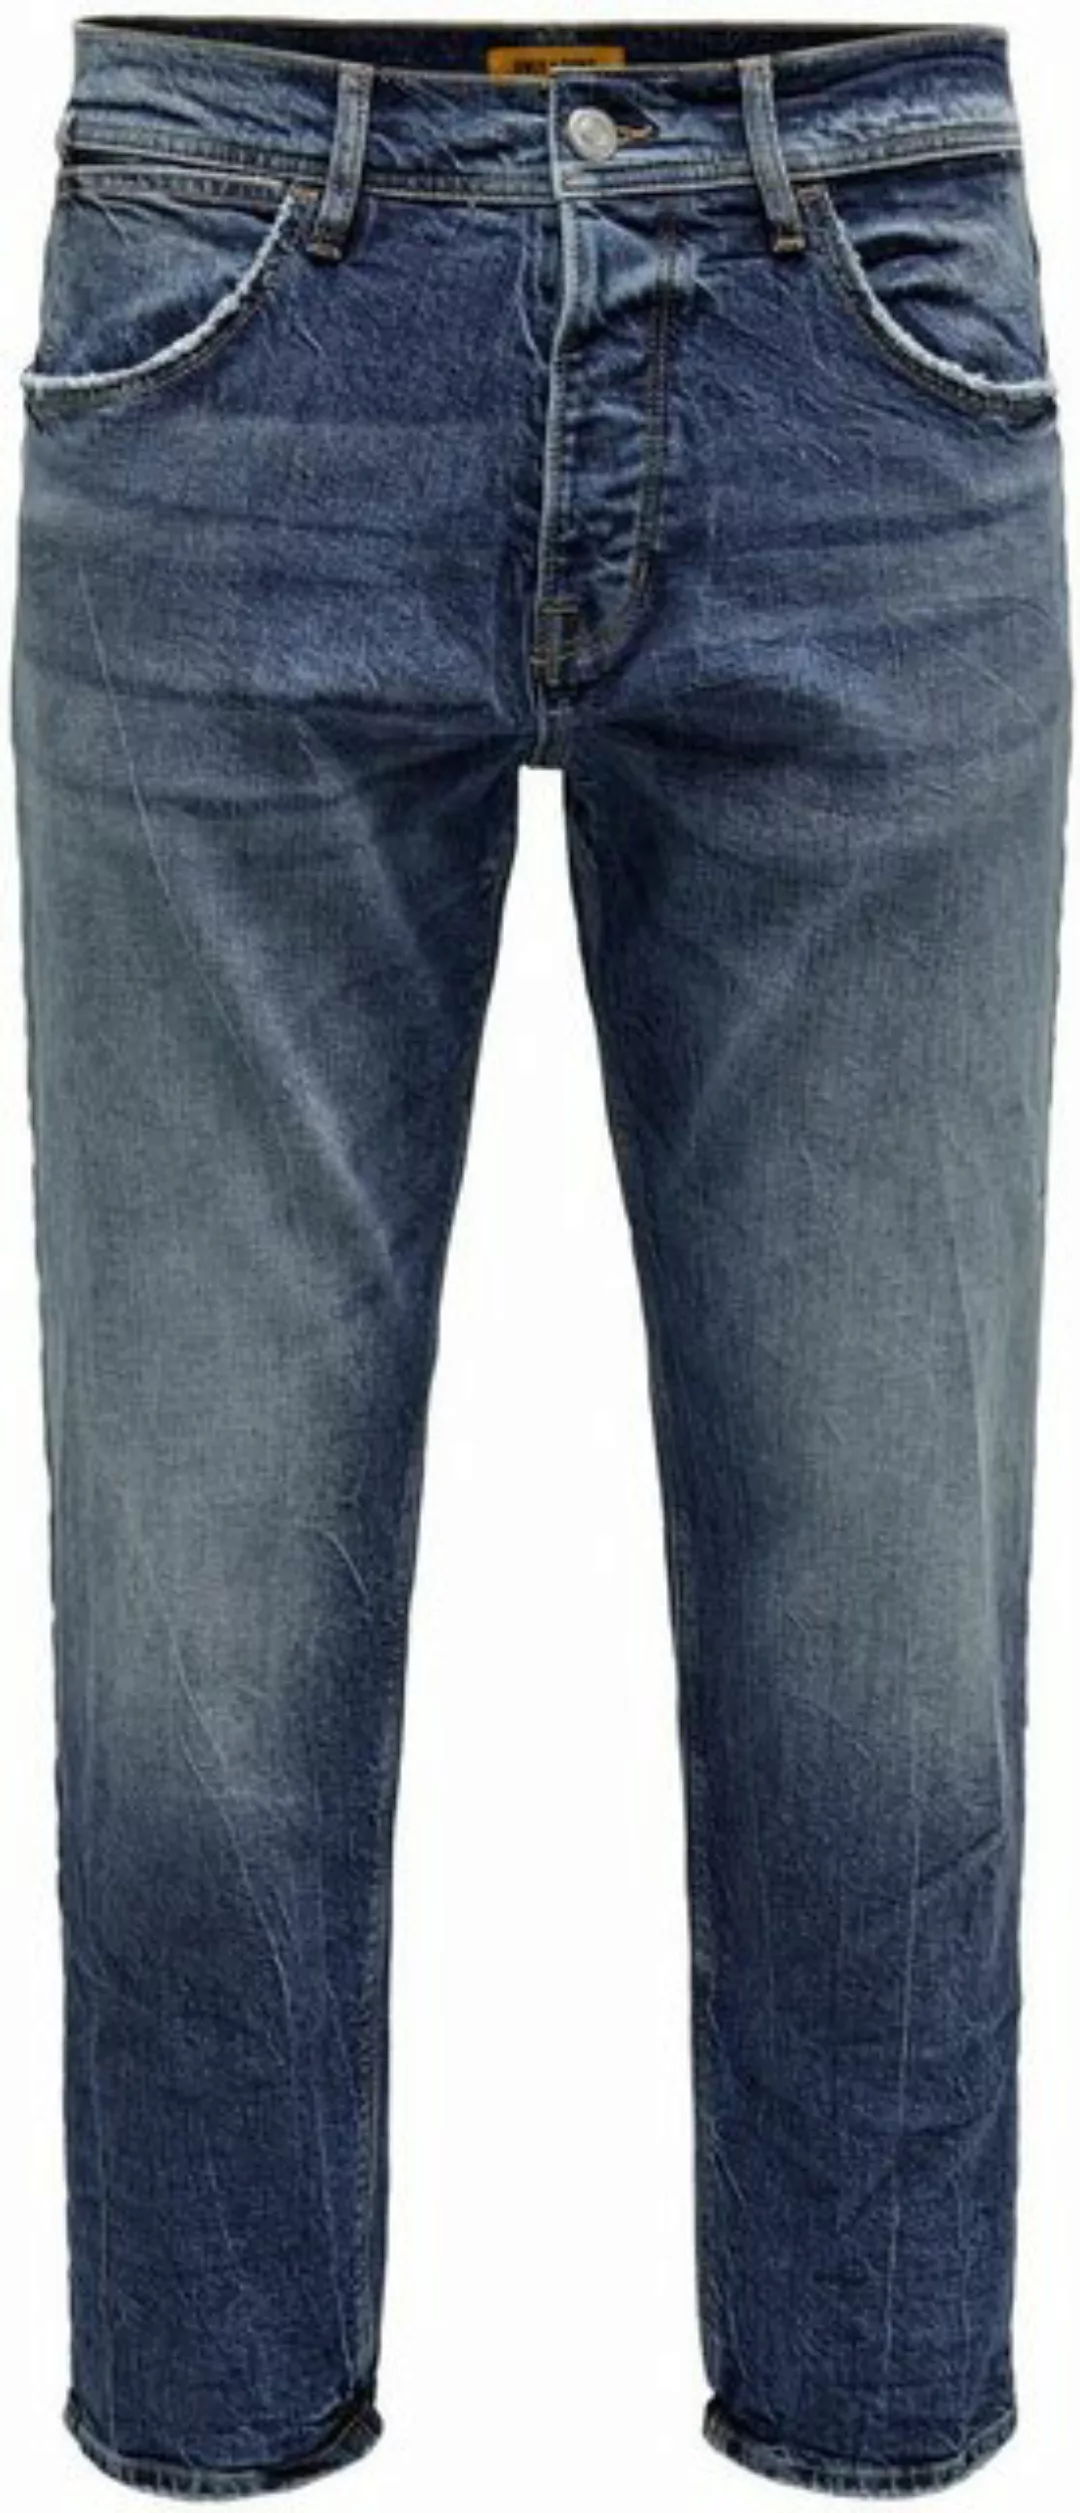 ONLY & SONS 5-Pocket-Jeans ONSAVI COMFORT L. BLUE 4934 JEANS NOOS günstig online kaufen